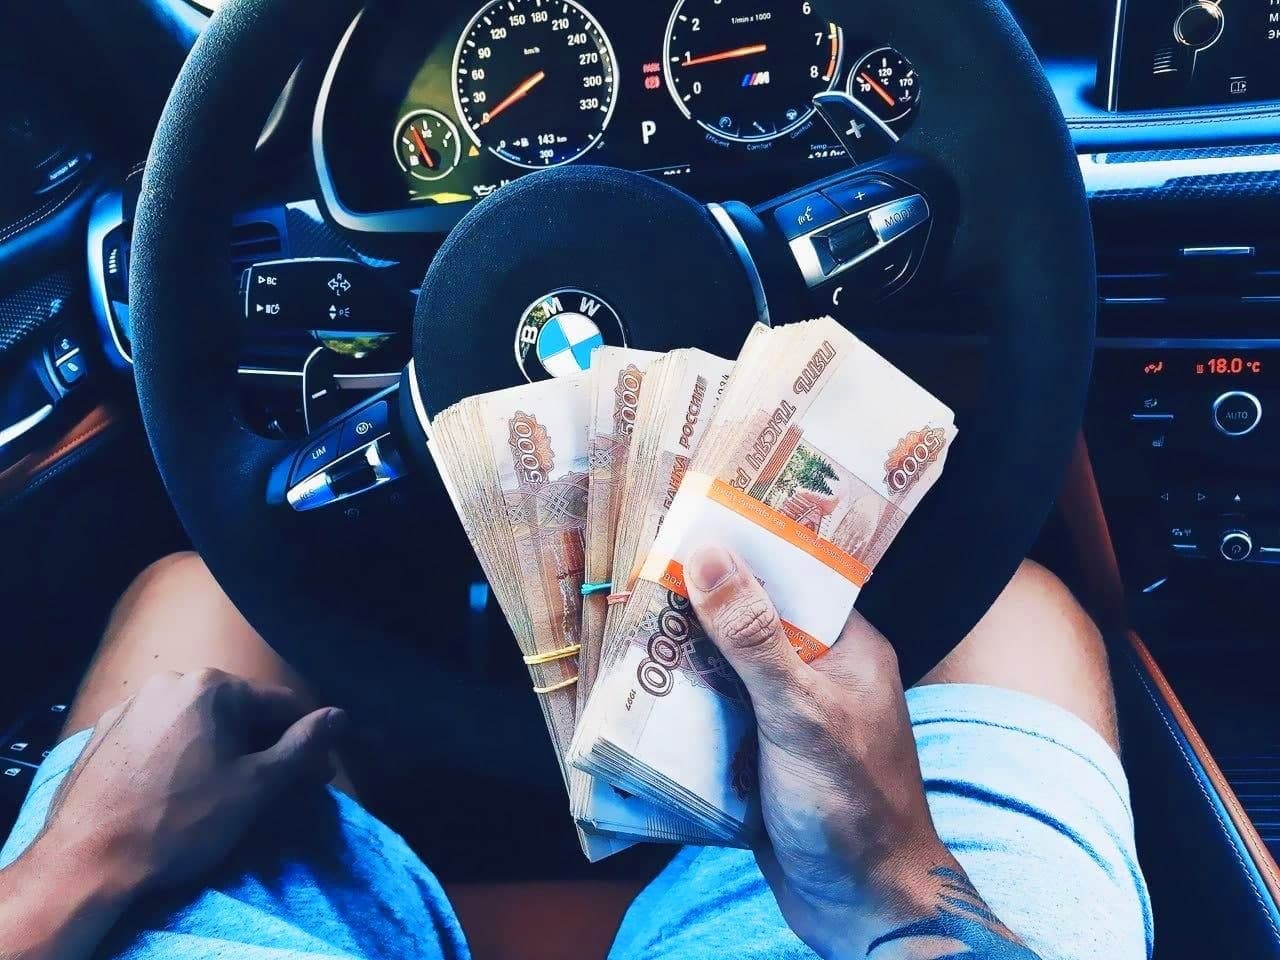 Деньги в машине